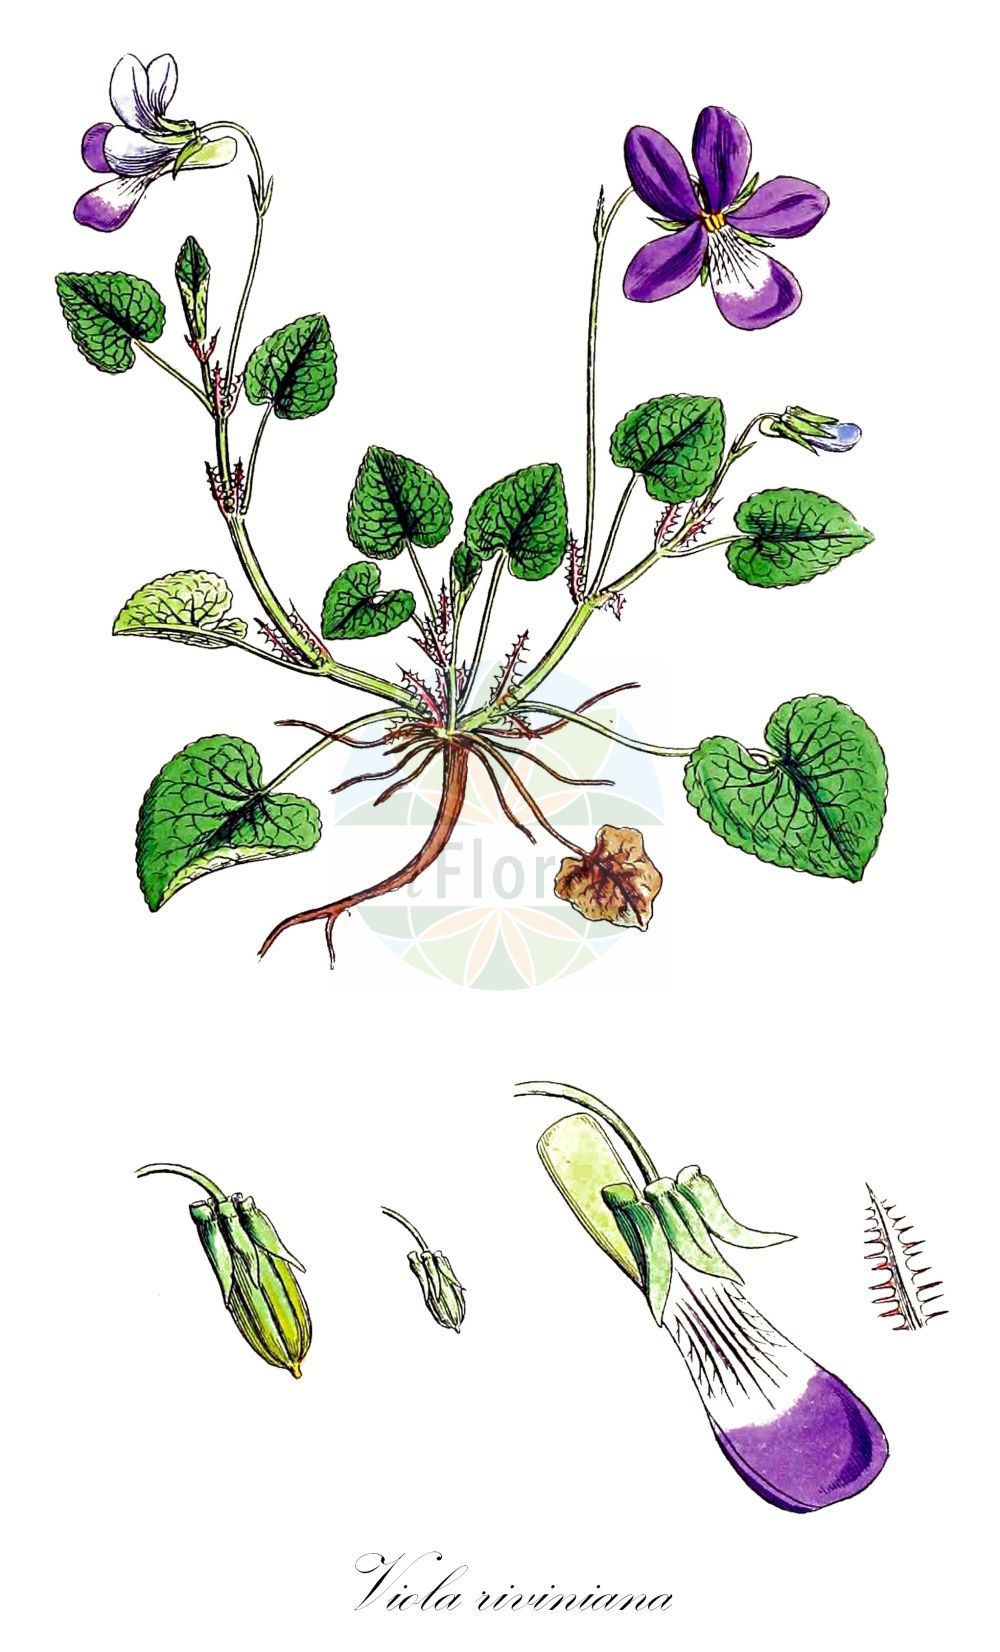 Historische Abbildung von Viola riviniana (Hain-Veilchen - Common Dog-violet). Das Bild zeigt Blatt, Bluete, Frucht und Same. ---- Historical Drawing of Viola riviniana (Hain-Veilchen - Common Dog-violet).The image is showing leaf, flower, fruit and seed.(Viola riviniana,Hain-Veilchen,Common Dog-violet,Viola caniniformis,Viola insularis,Viola sylvestris subsp. riviniana,Rivinius-Veilchen,Viola,Veilchen,violet,Violaceae,Veilchengewaechse,Violet family,Blatt,Bluete,Frucht,Same,leaf,flower,fruit,seed,Sowerby (1790-1813))